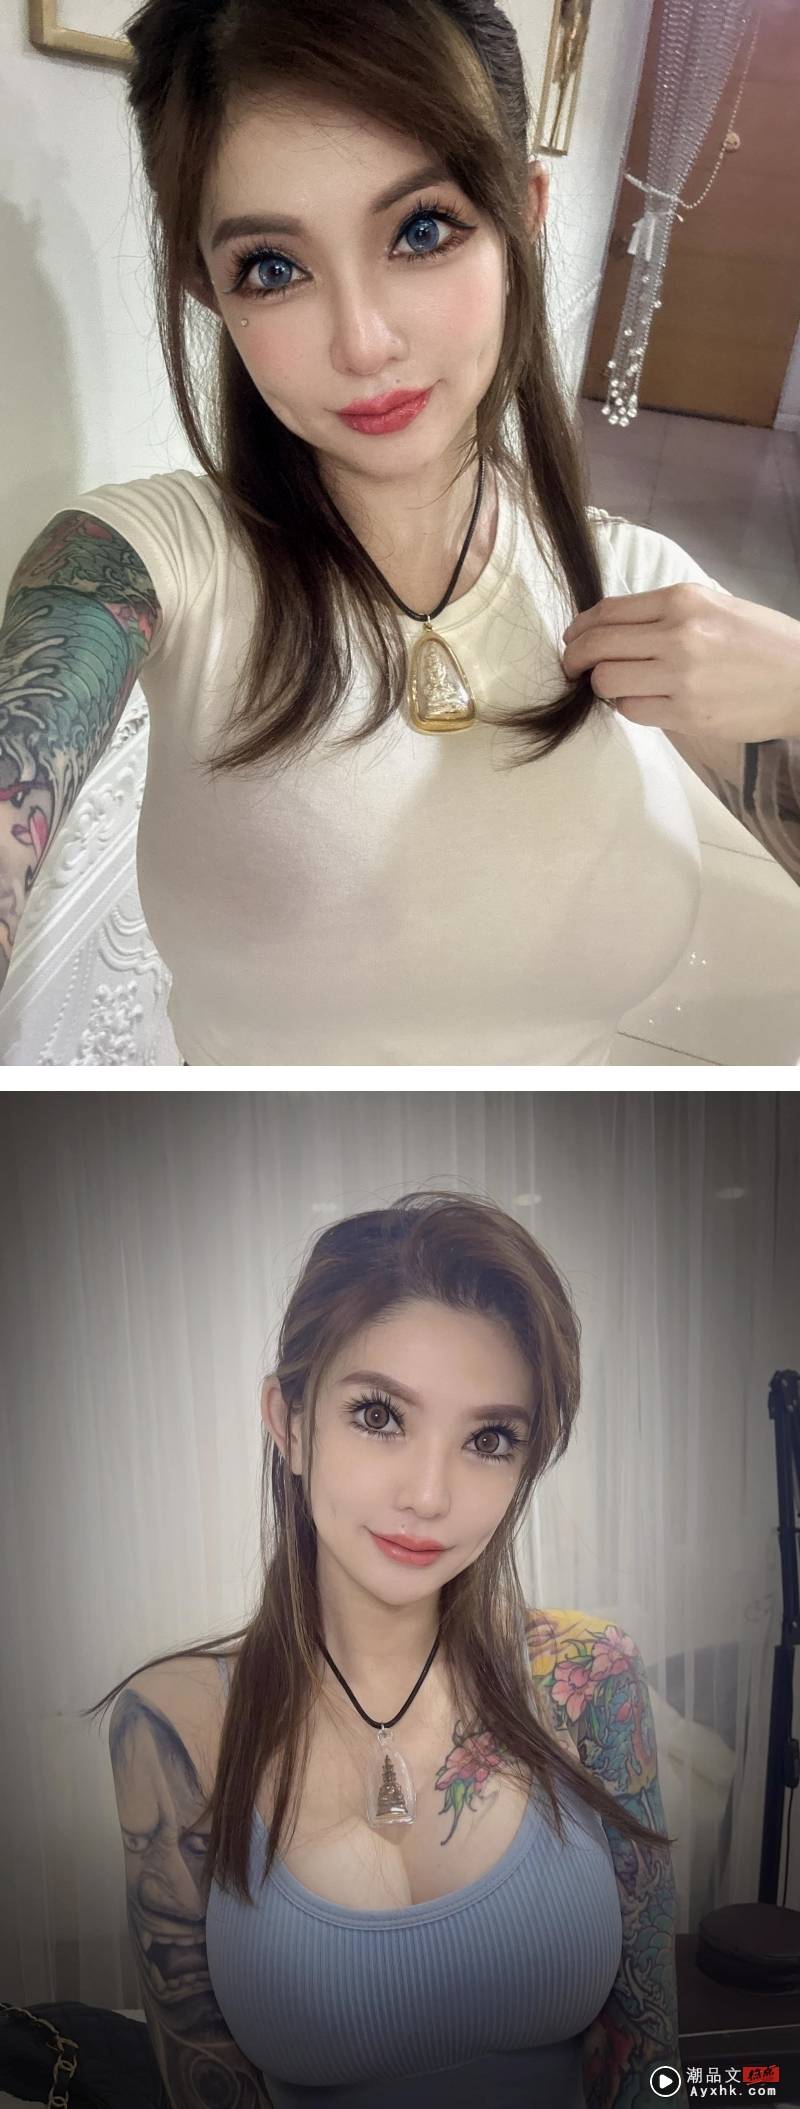 马来西亚网红纹身师Kinki宣布：离婚！远离家暴男！“丧偶式育儿不如单亲家庭” 娱乐资讯 图1张